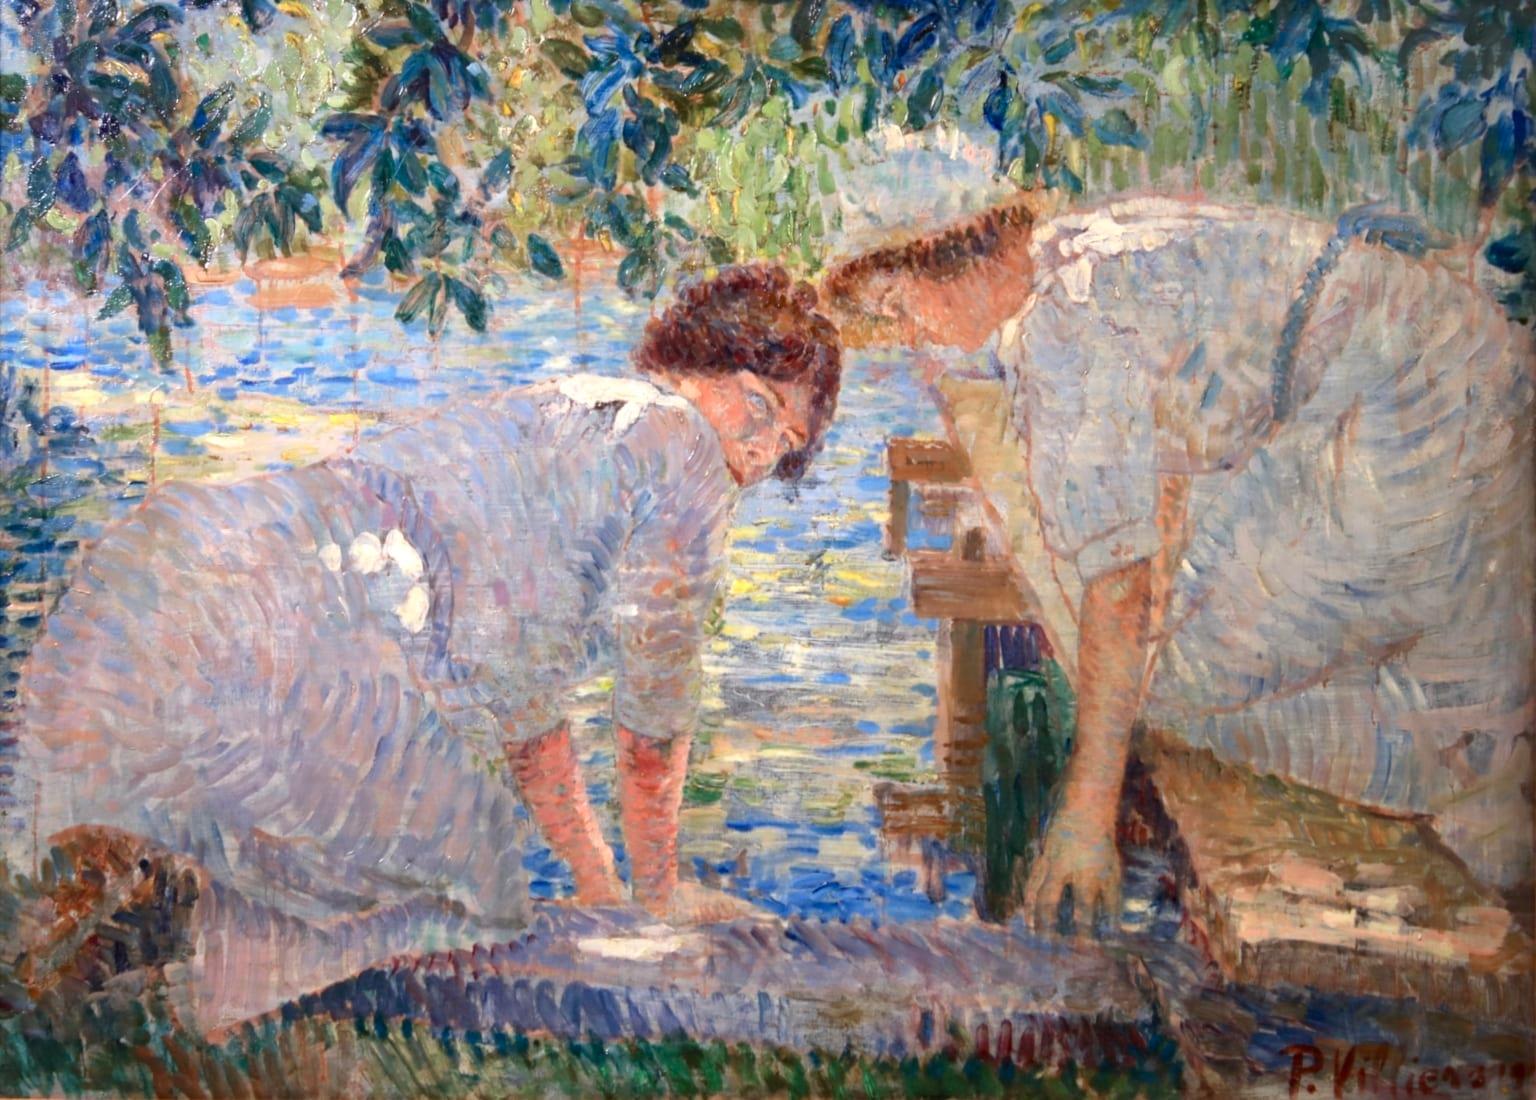 Paul Edmond Villiers Figurative Painting - Lavandieres - Impressionist Oil, Women by River in Landscape by Paul Villiers